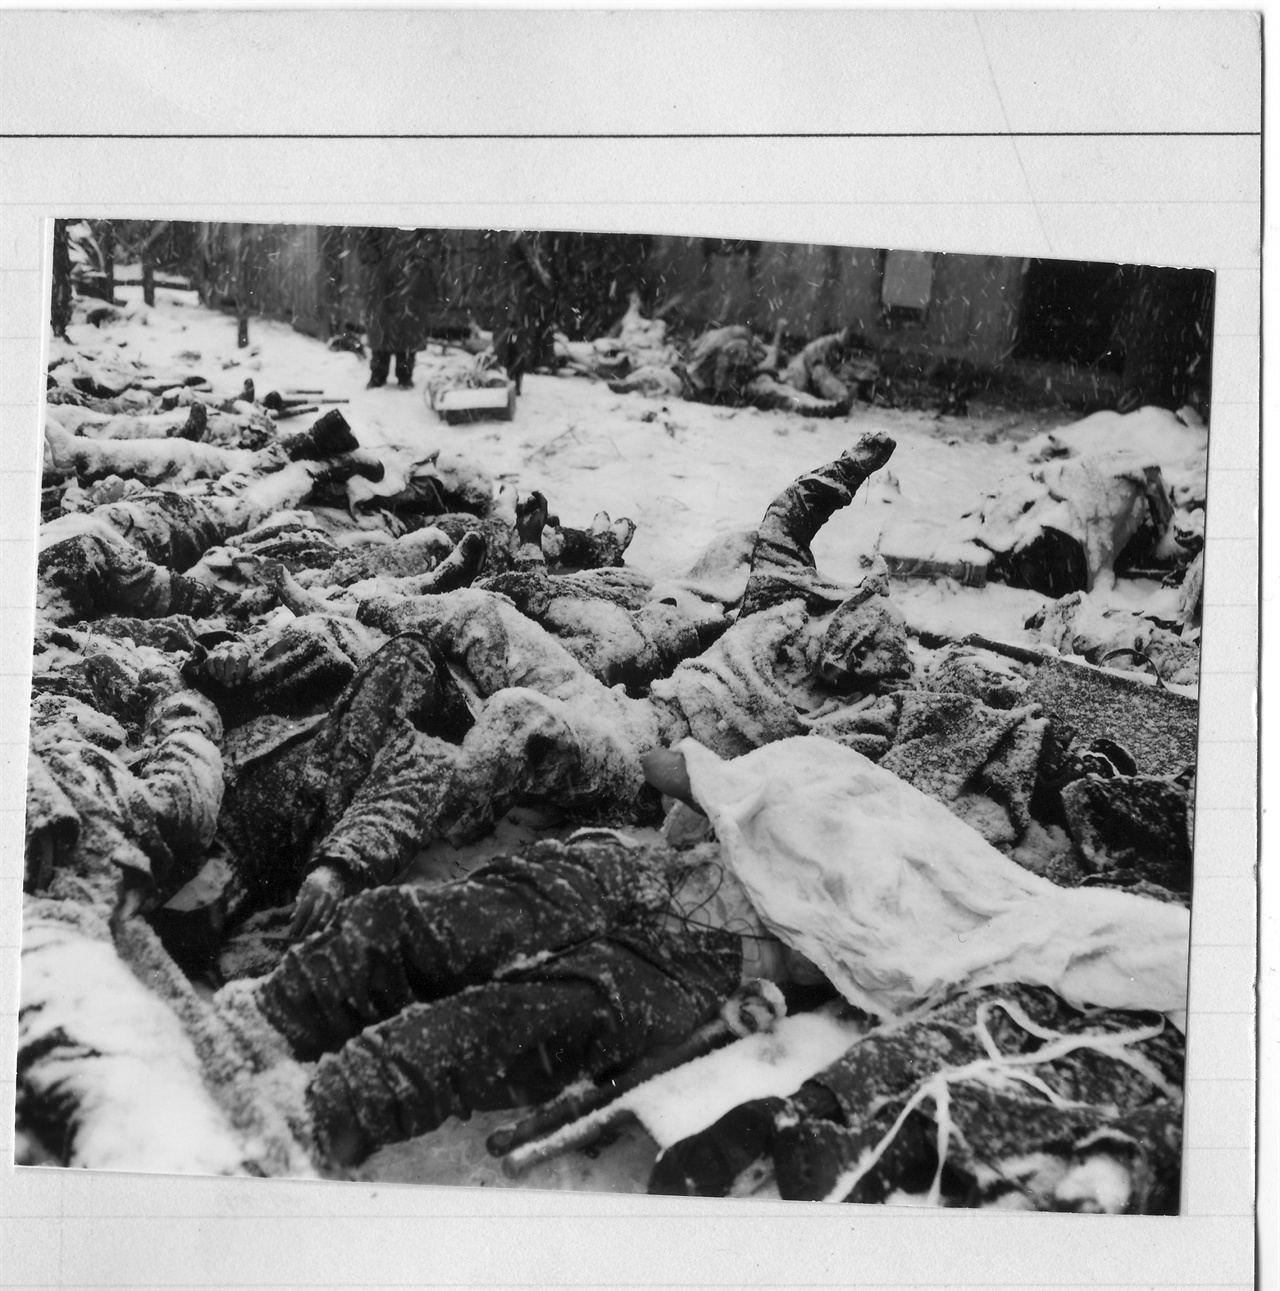  1950. 12. 8. 유엔군들이 장진호전투에서 후퇴 중 동사하여 고토리 길섶에 뉘어져 있다.